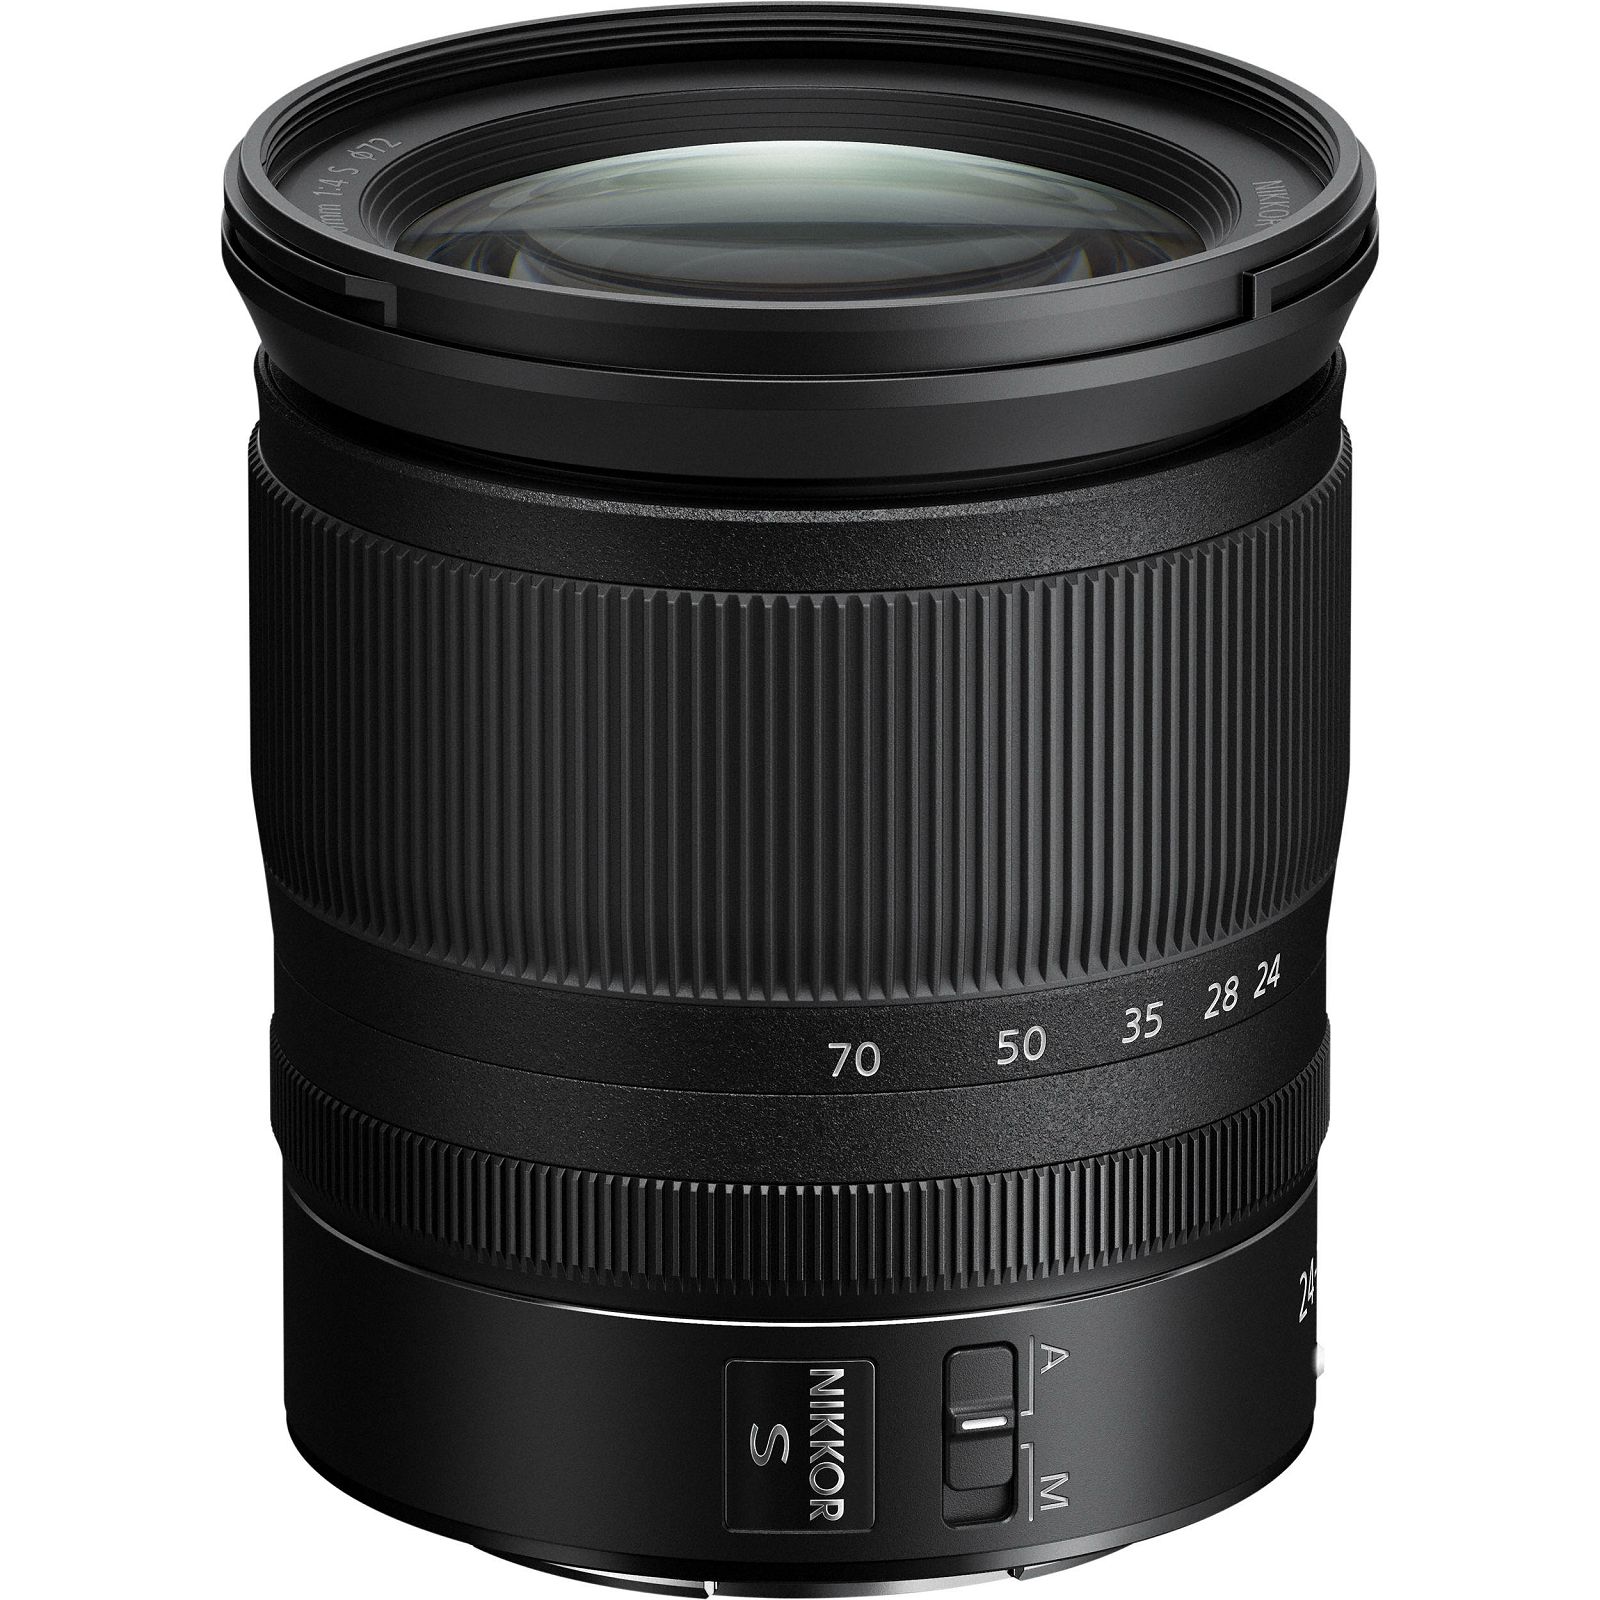 Nikon Z 24-70mm f/4 S standardni objektiv Nikkor 24-70 F4 zoom lens (JMA704DA)